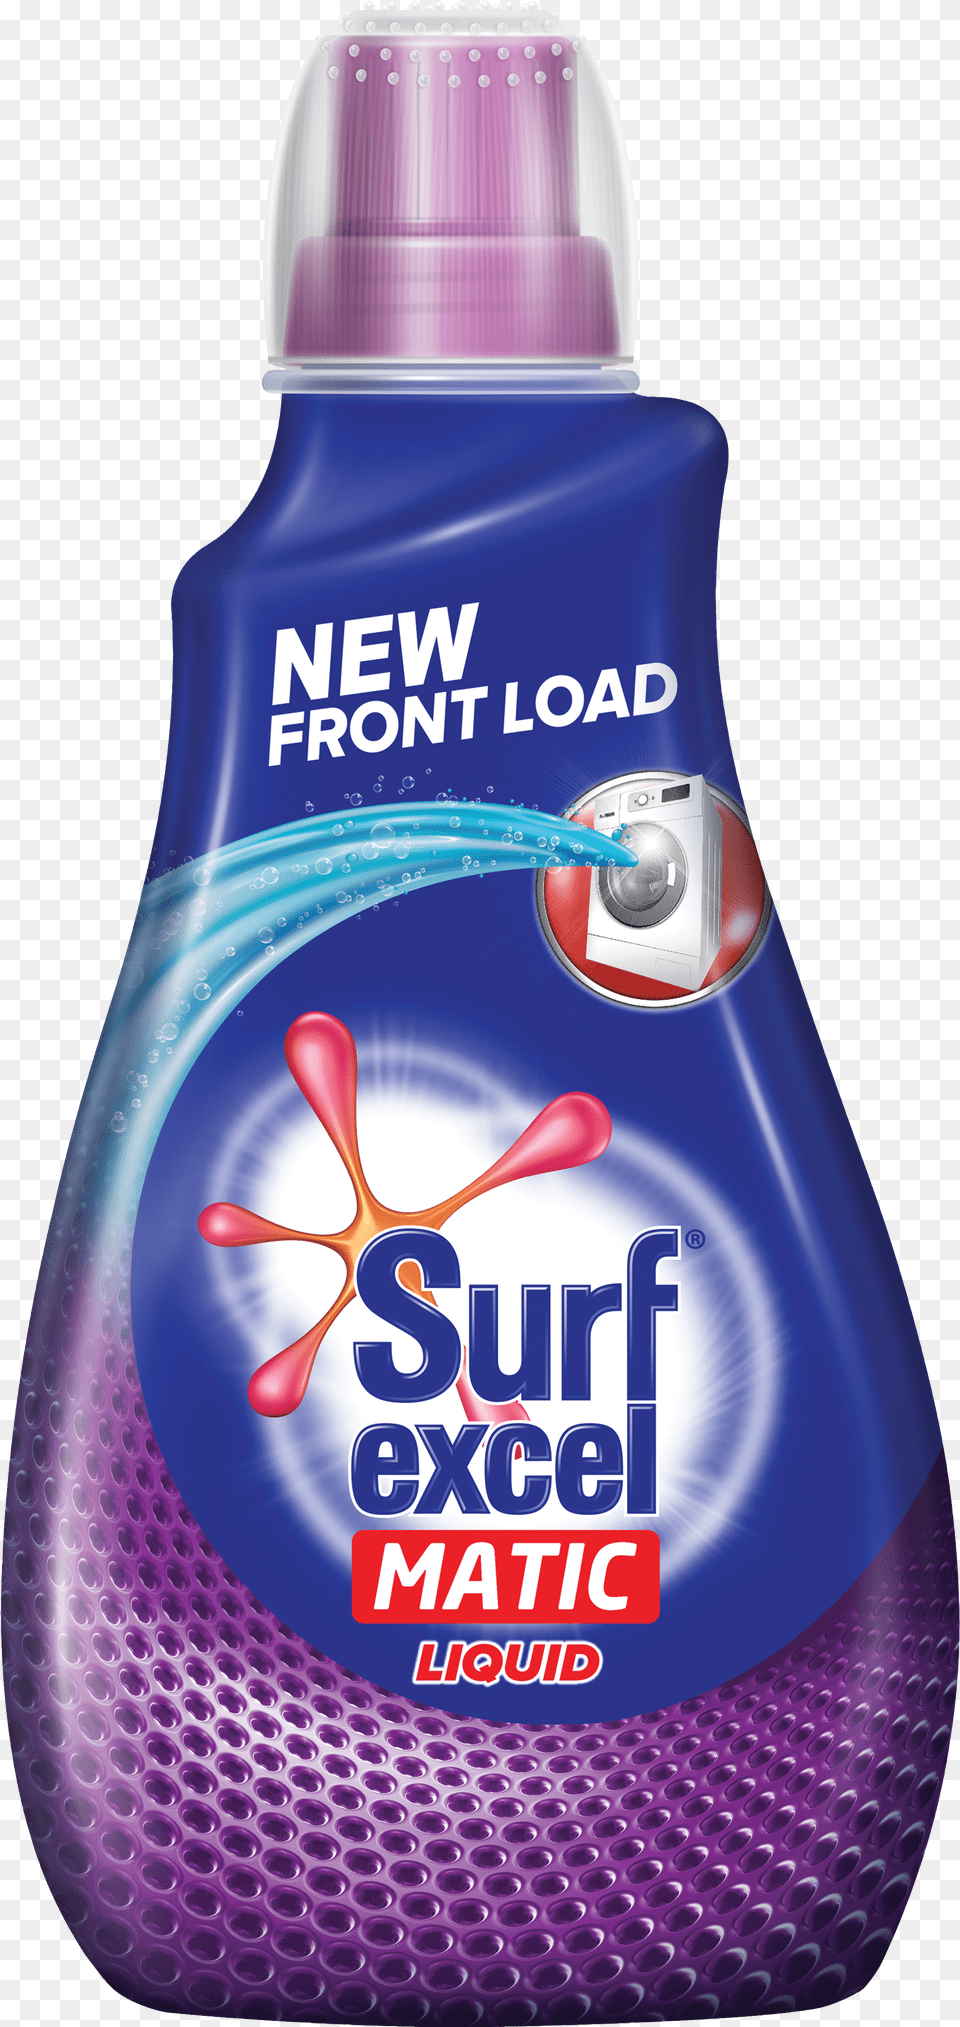 Surf Excel Matic Liquid Surf Excel Matic Liquid, Emblem, Symbol Free Png